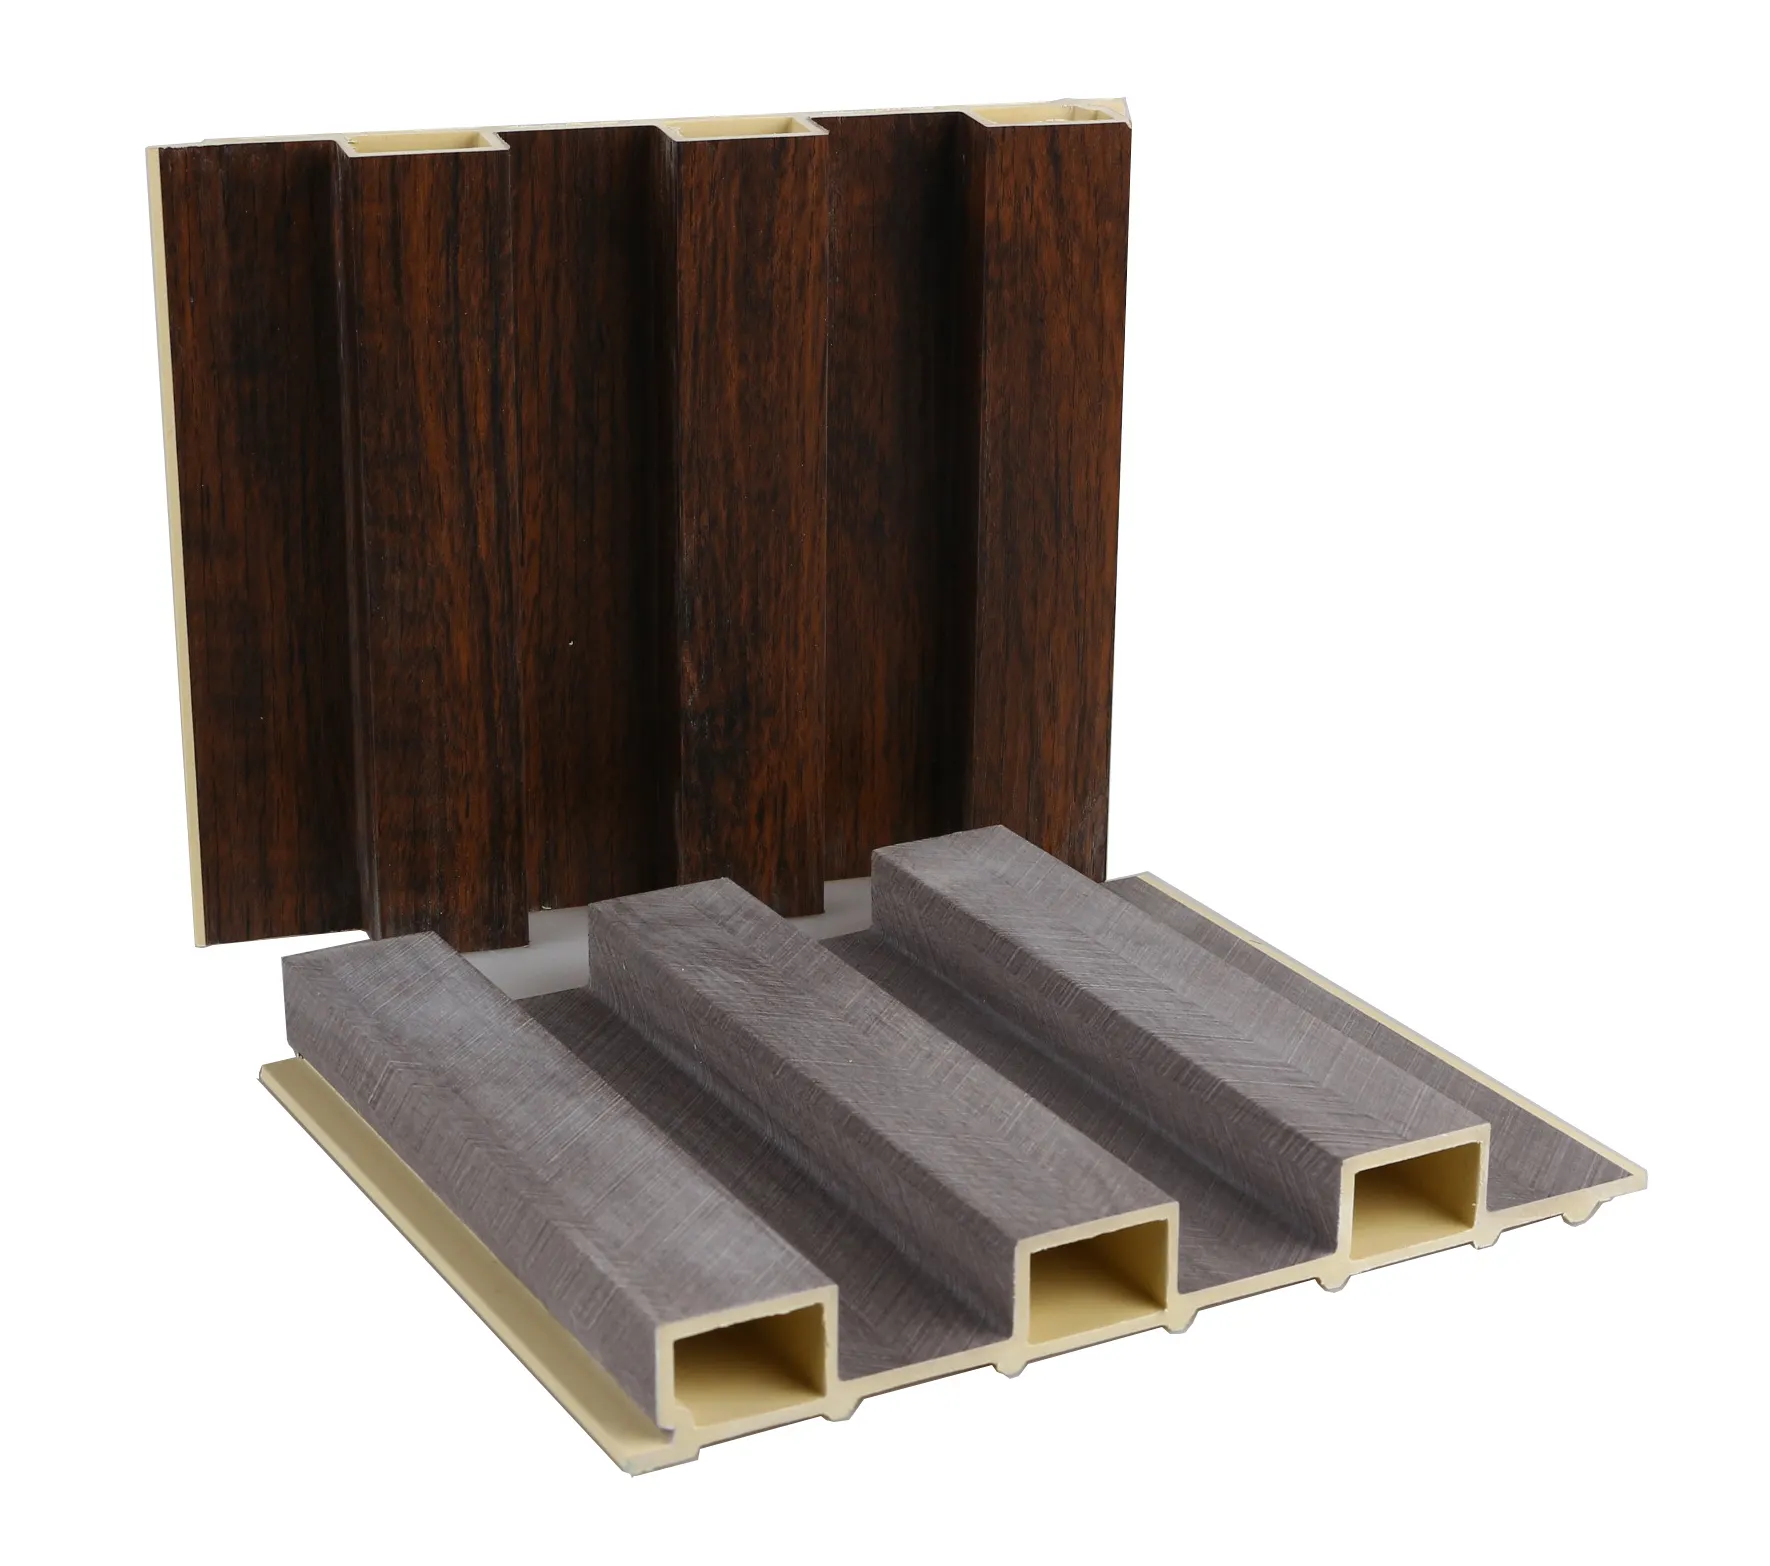 Panel de pared Wpc de madera y plástico de alta calidad para uso en interiores Paneles de pared estriados Fabricantes de paneles de pared Wpc al por mayor de China